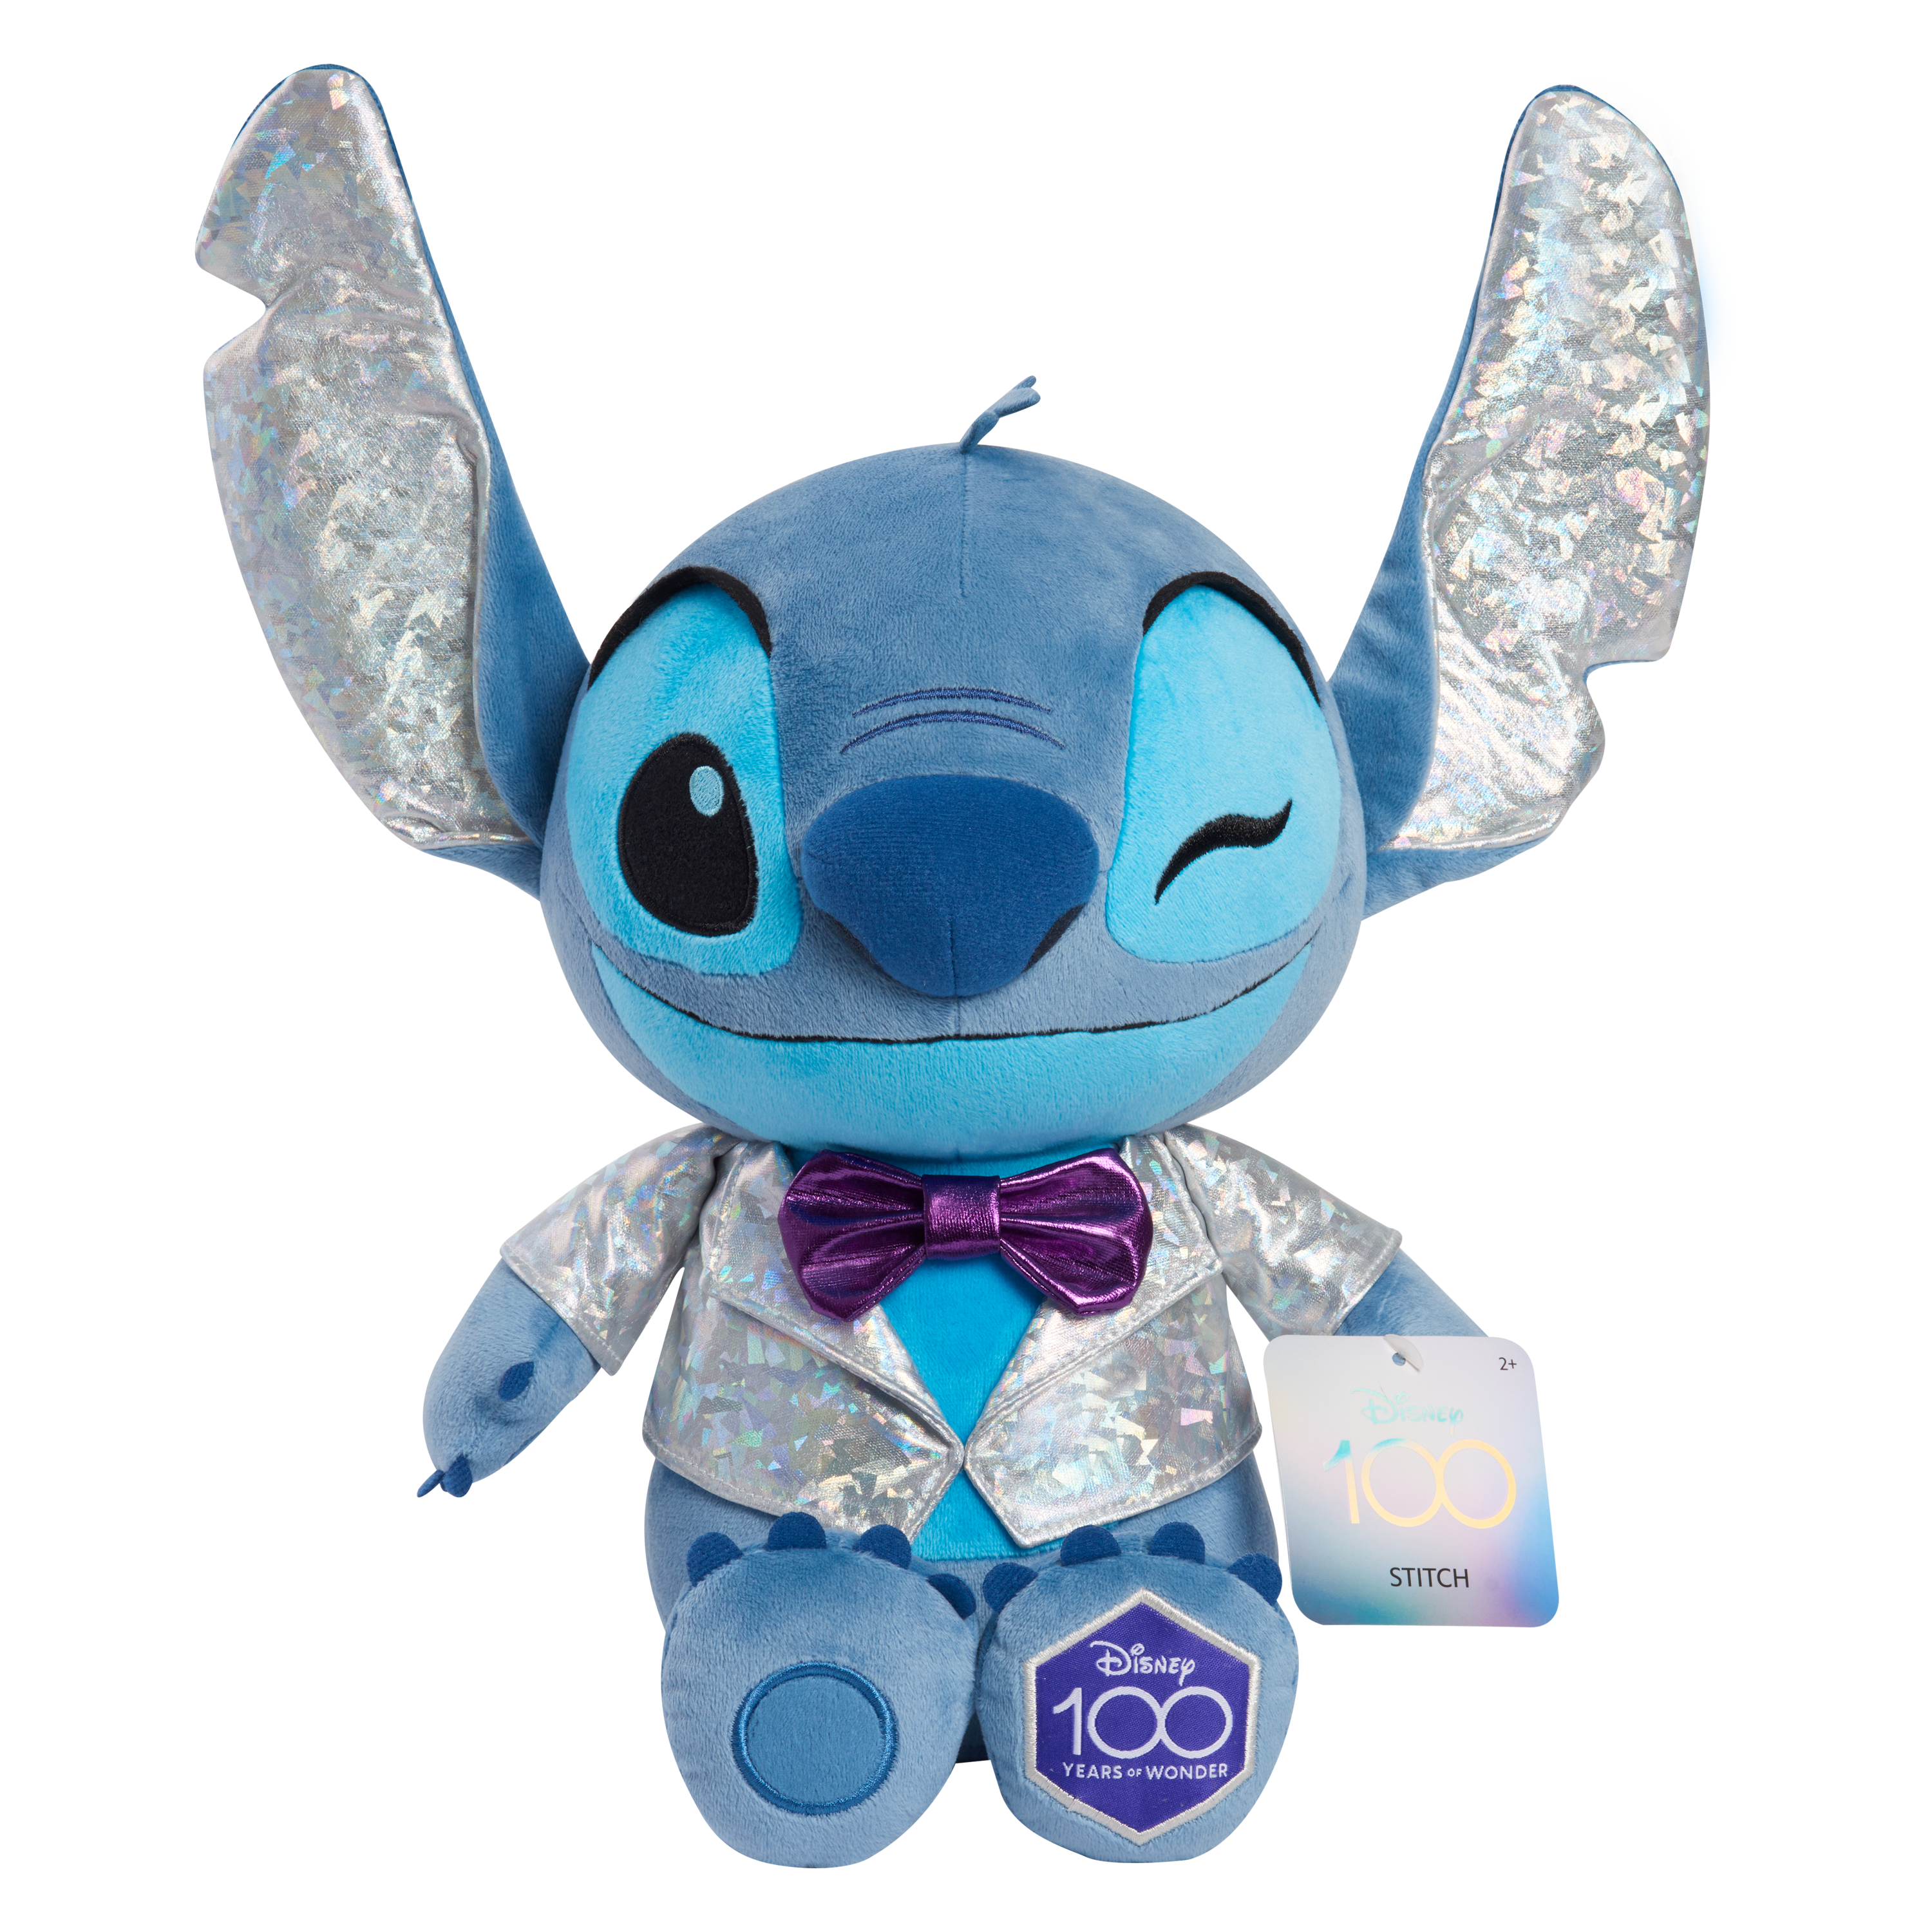 Disney 100 Stitch Charm